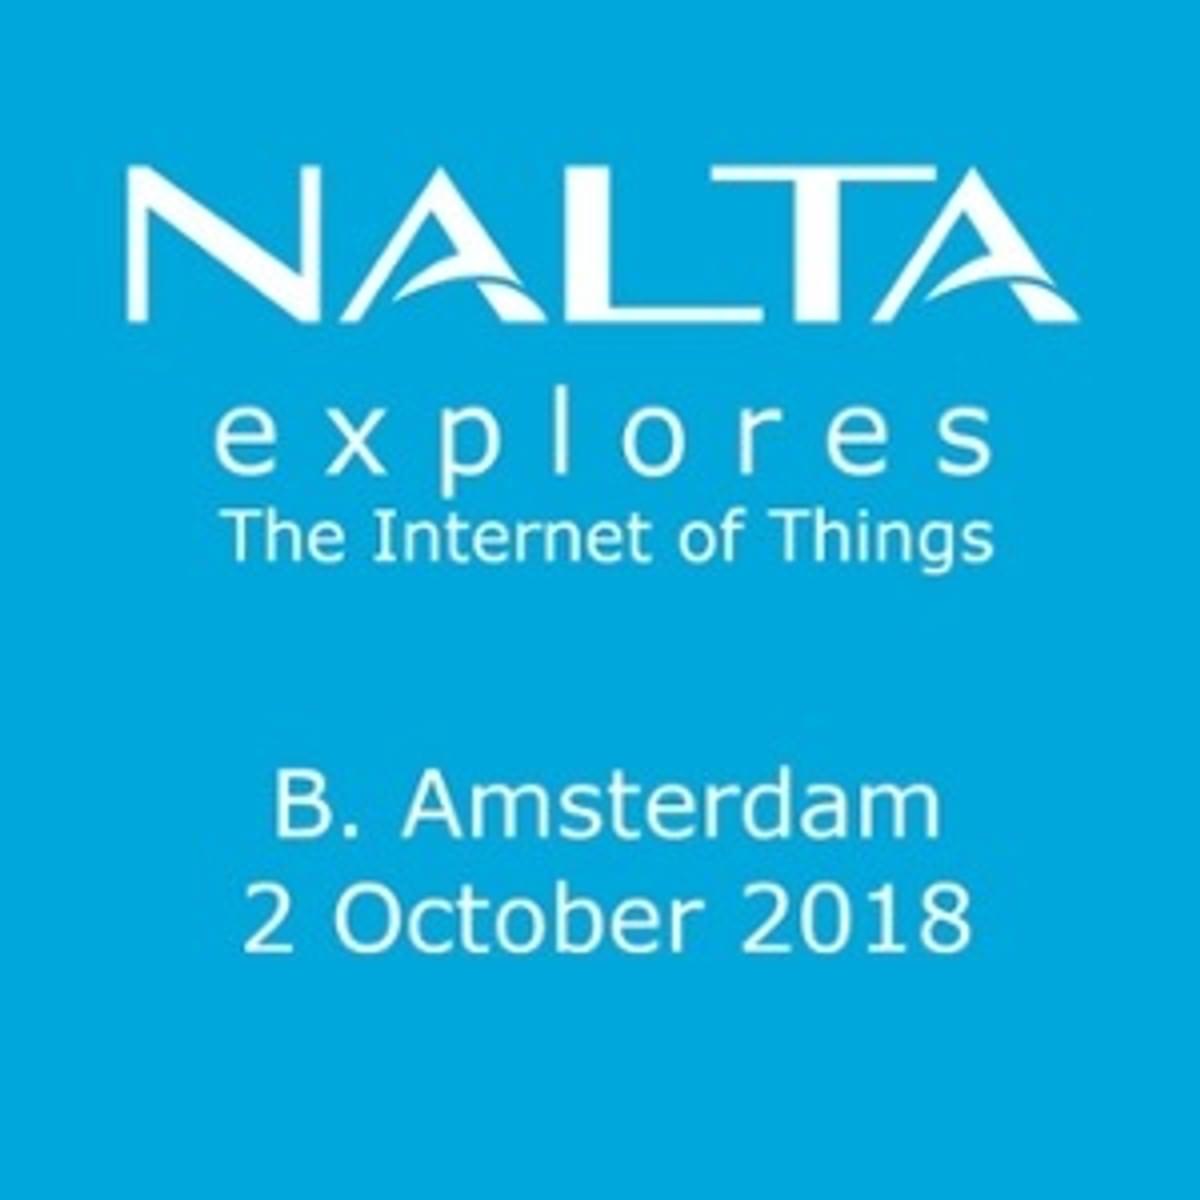 Nalta Explores event in B. Amsterdam image